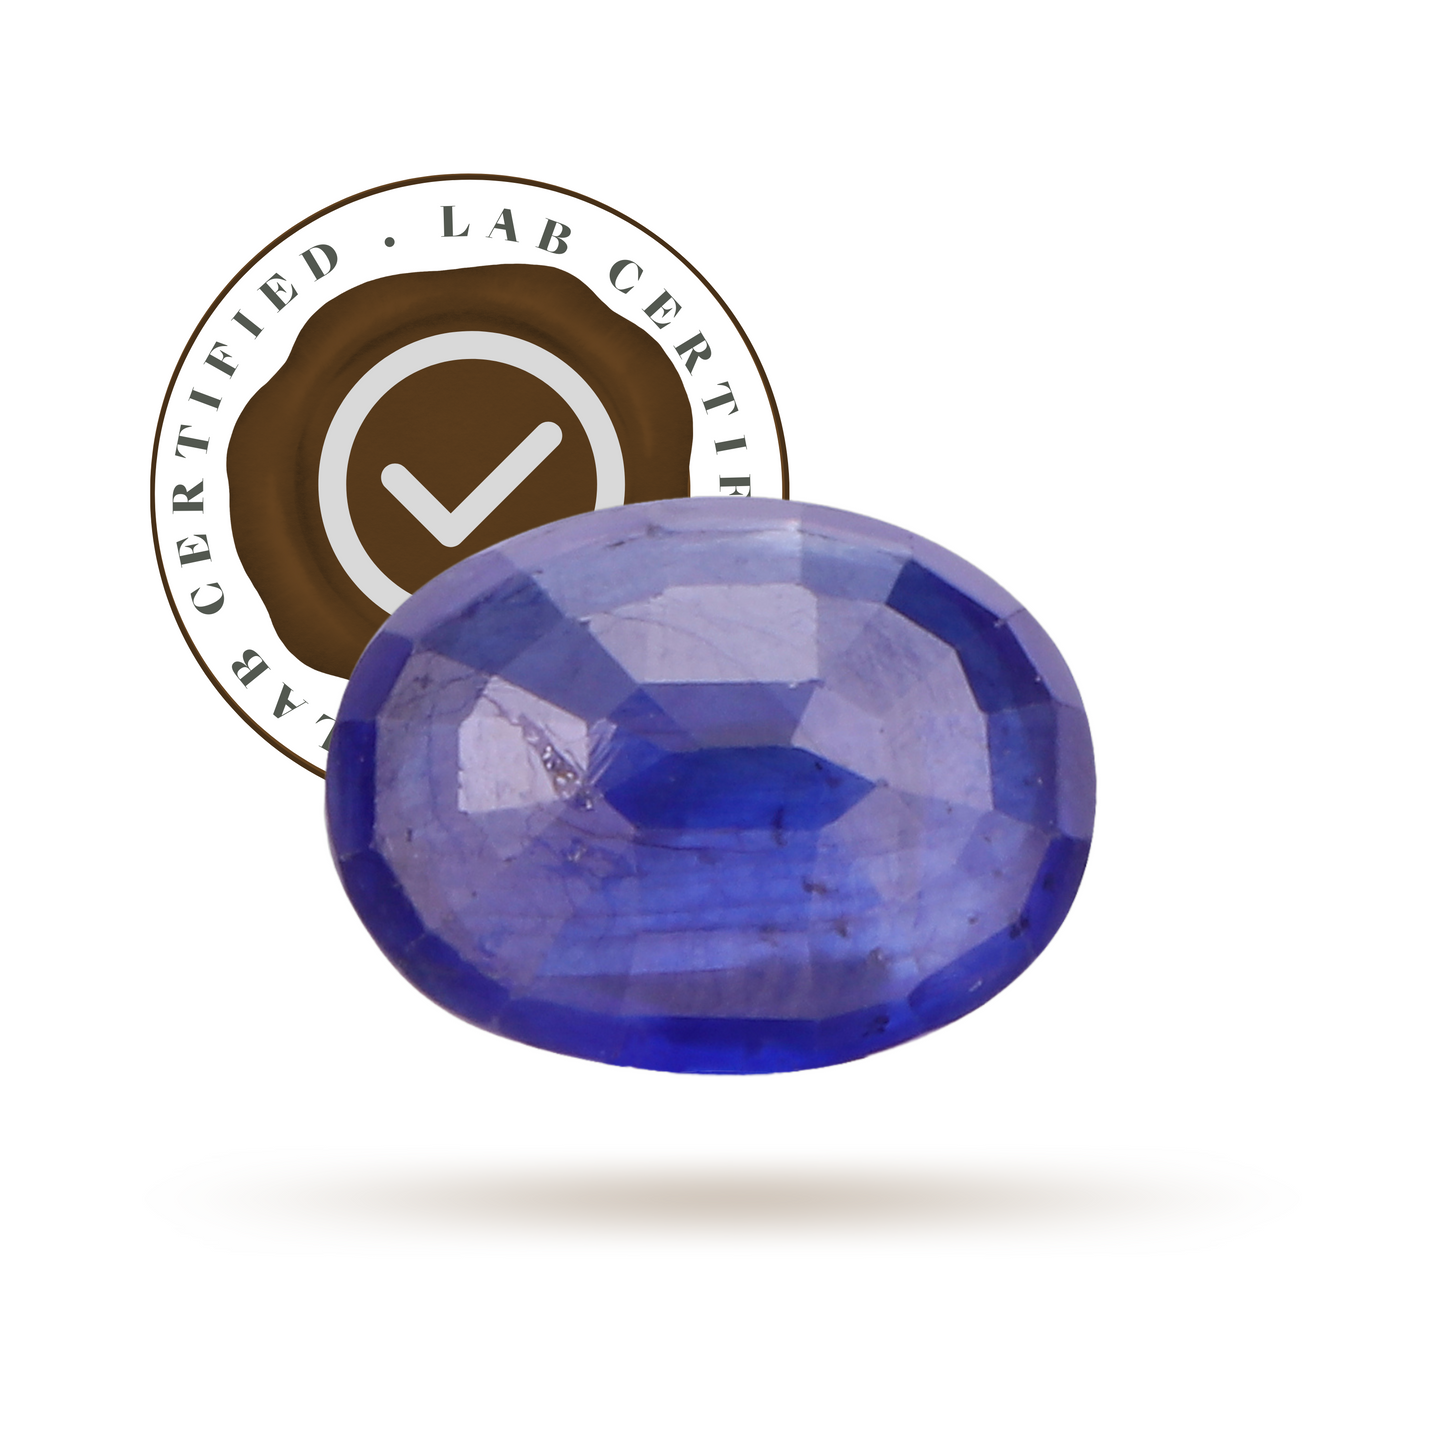 Blue Sapphire Luxury ( 8.36 Ratti )-Gemsmantra-best-online-gems-shop-in-india